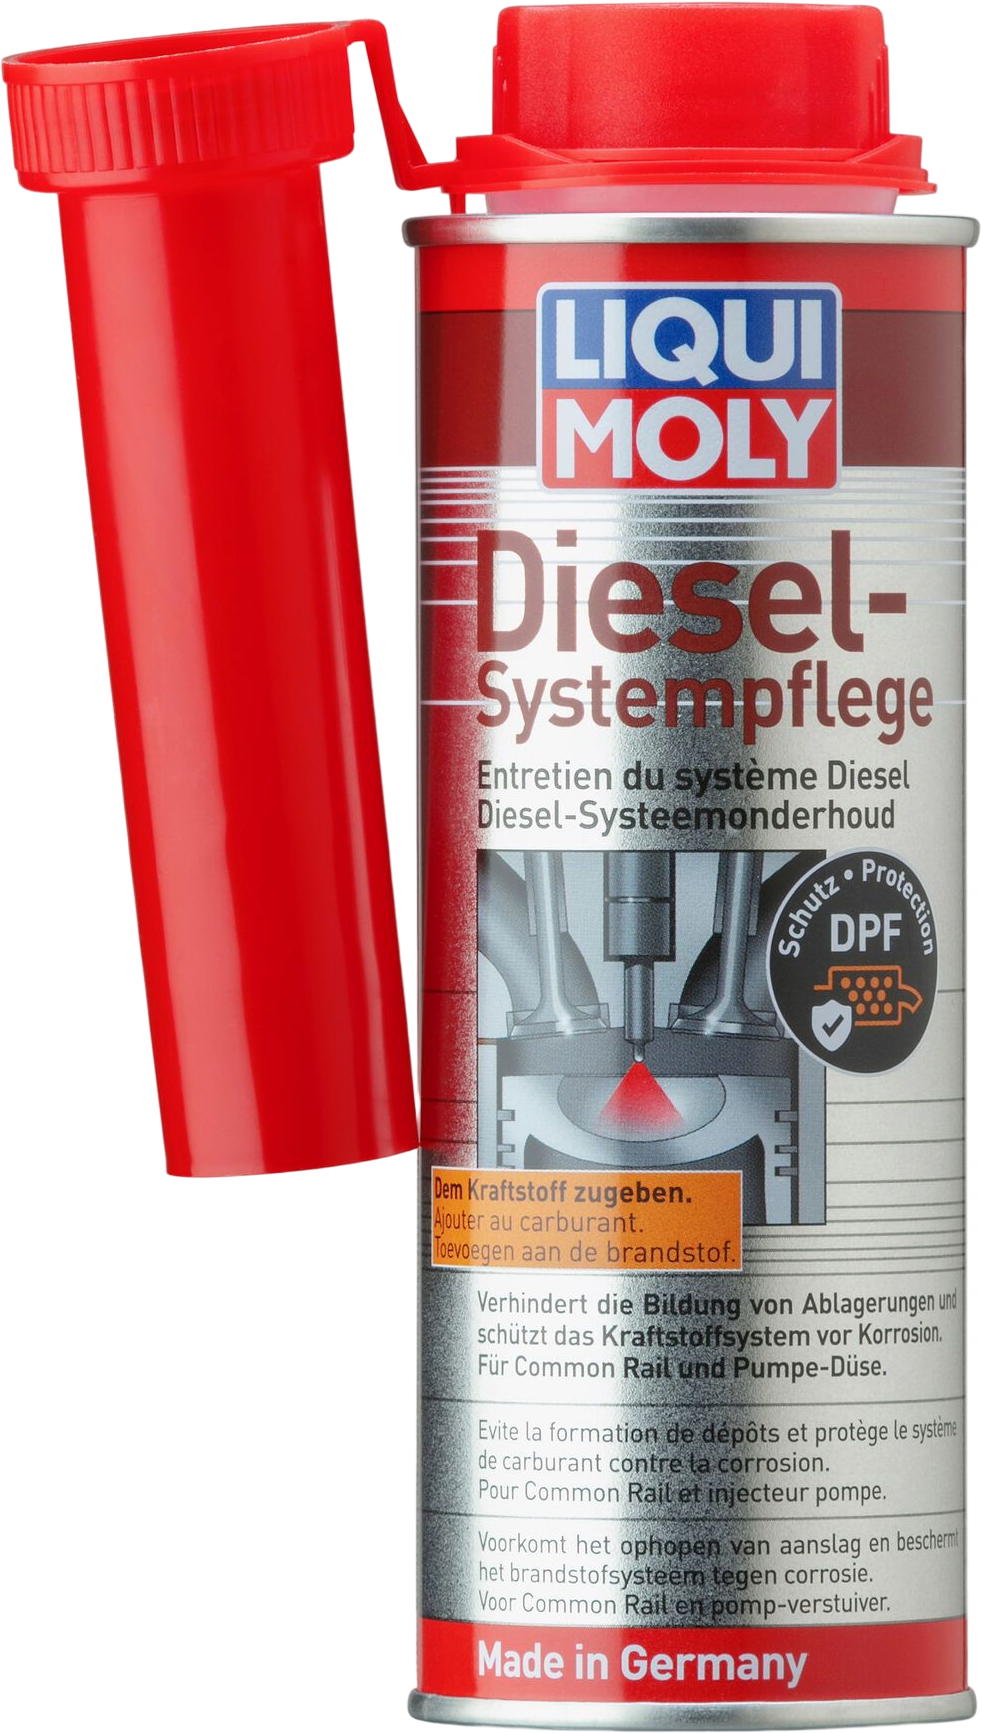 Liqui Moly Diesel-systeemonderhoud, 250 ml